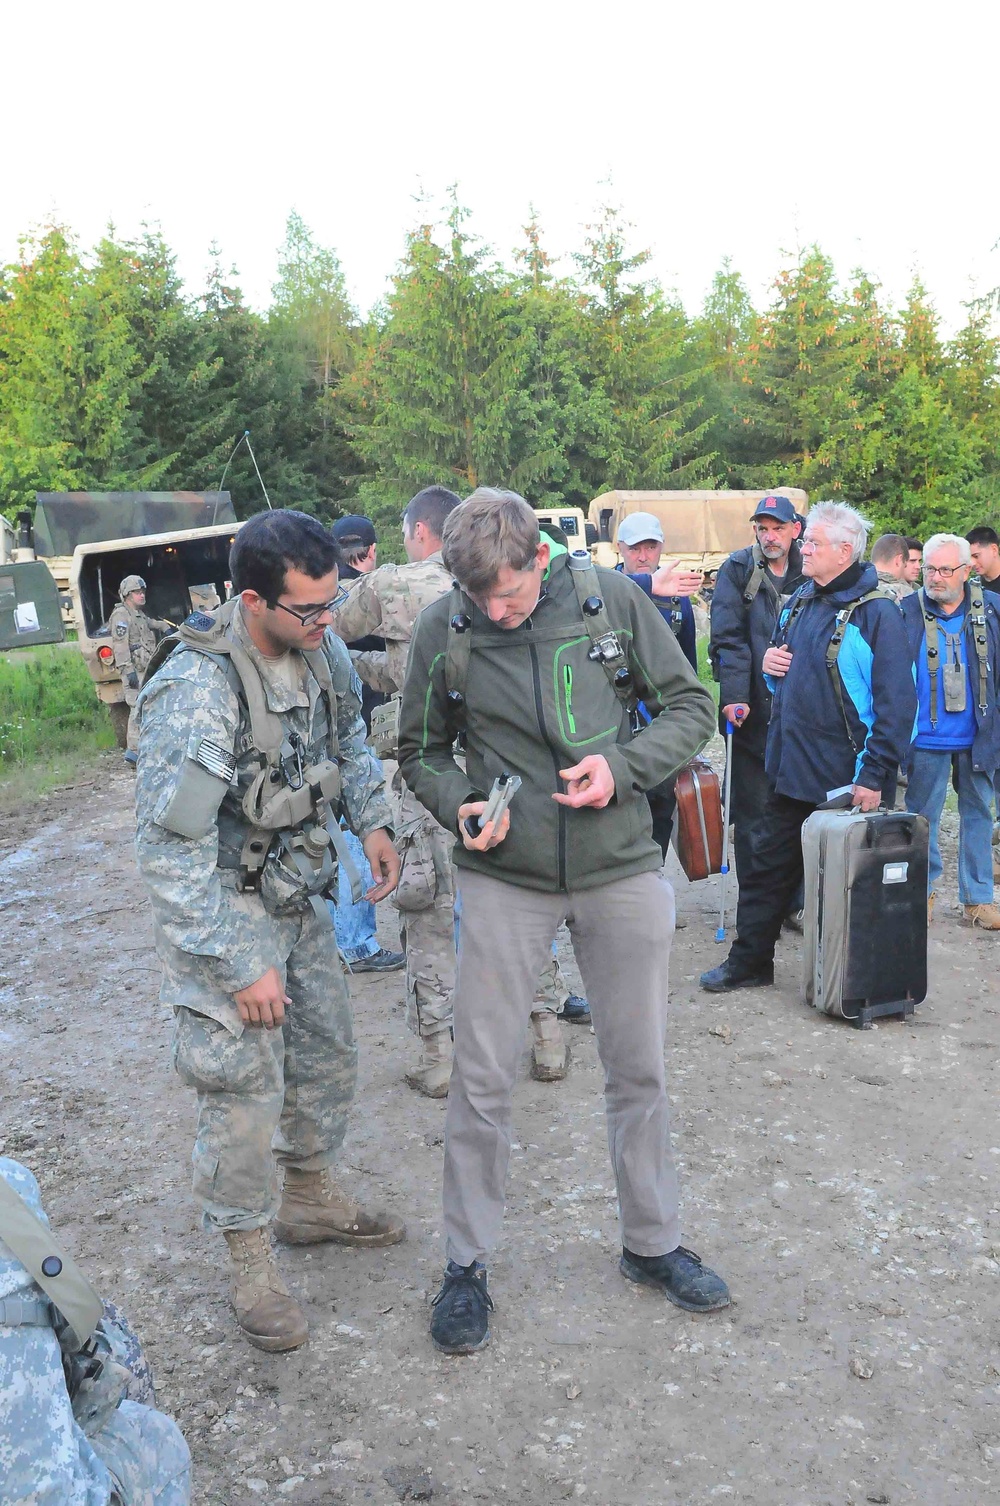 82nd Airborne Division forces evacuate U.S. citizens in Swift Response scenario